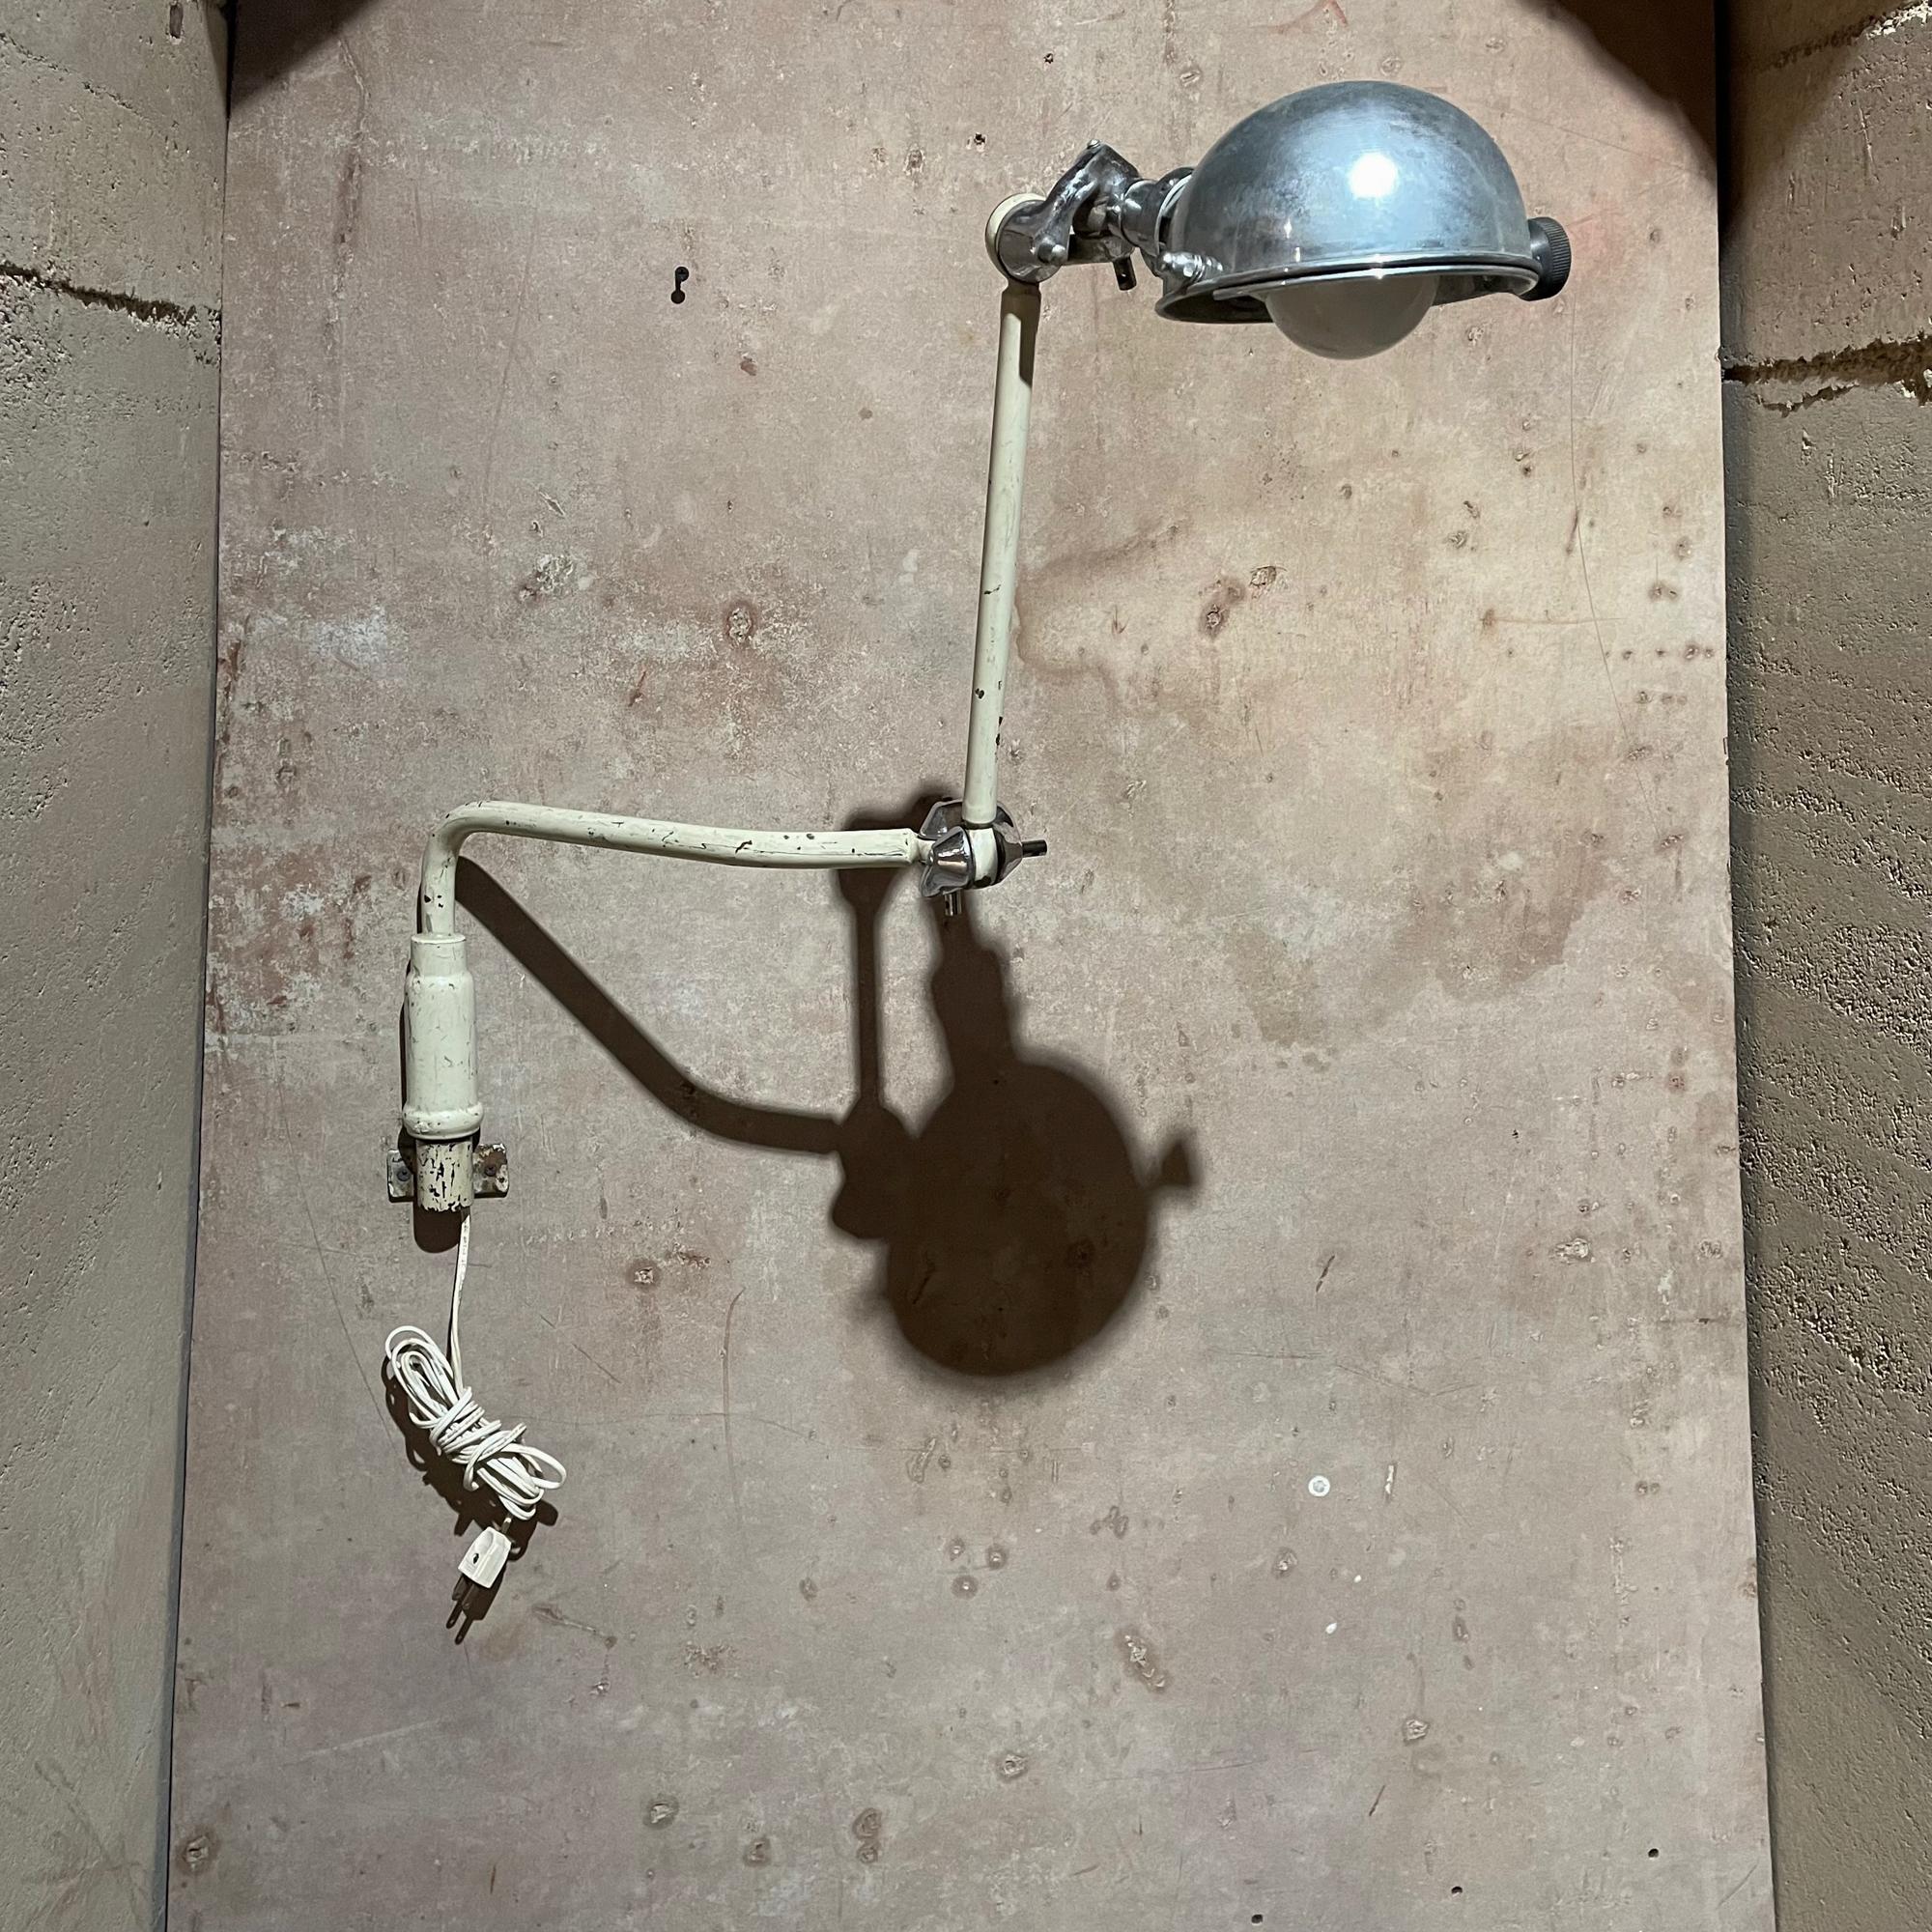 Lampe-applique murale
Vintage Industrial medical light surgical dental wall sconce lamp circa 1930s
Construit en bronze et en laiton. Le laiton est chromé.
Le corps en bronze est peint en blanc ; certaines parties sont chromées. 
La lampe est